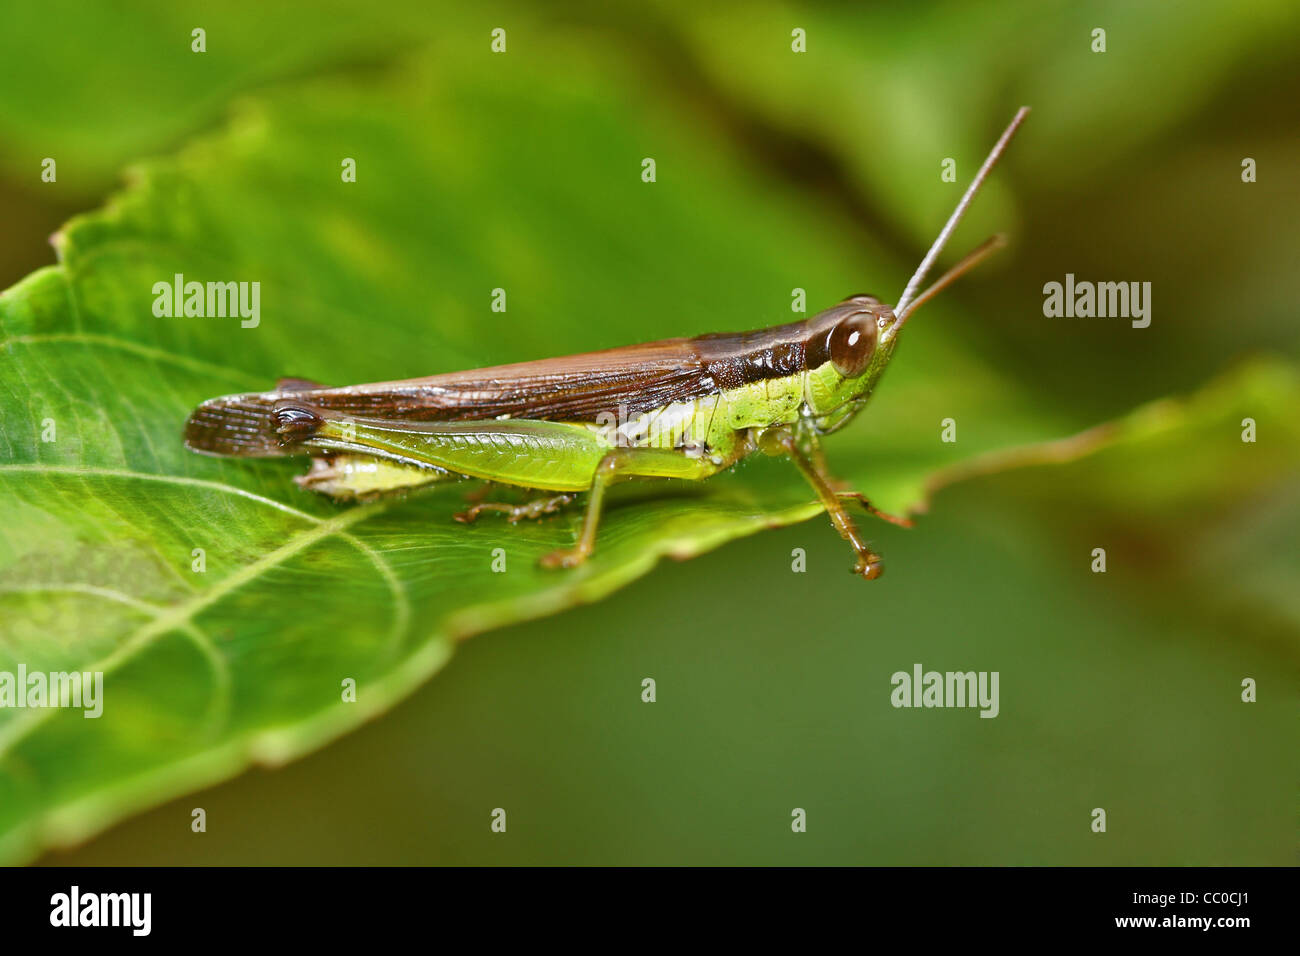 The short-horned grasshopper Stock Photo